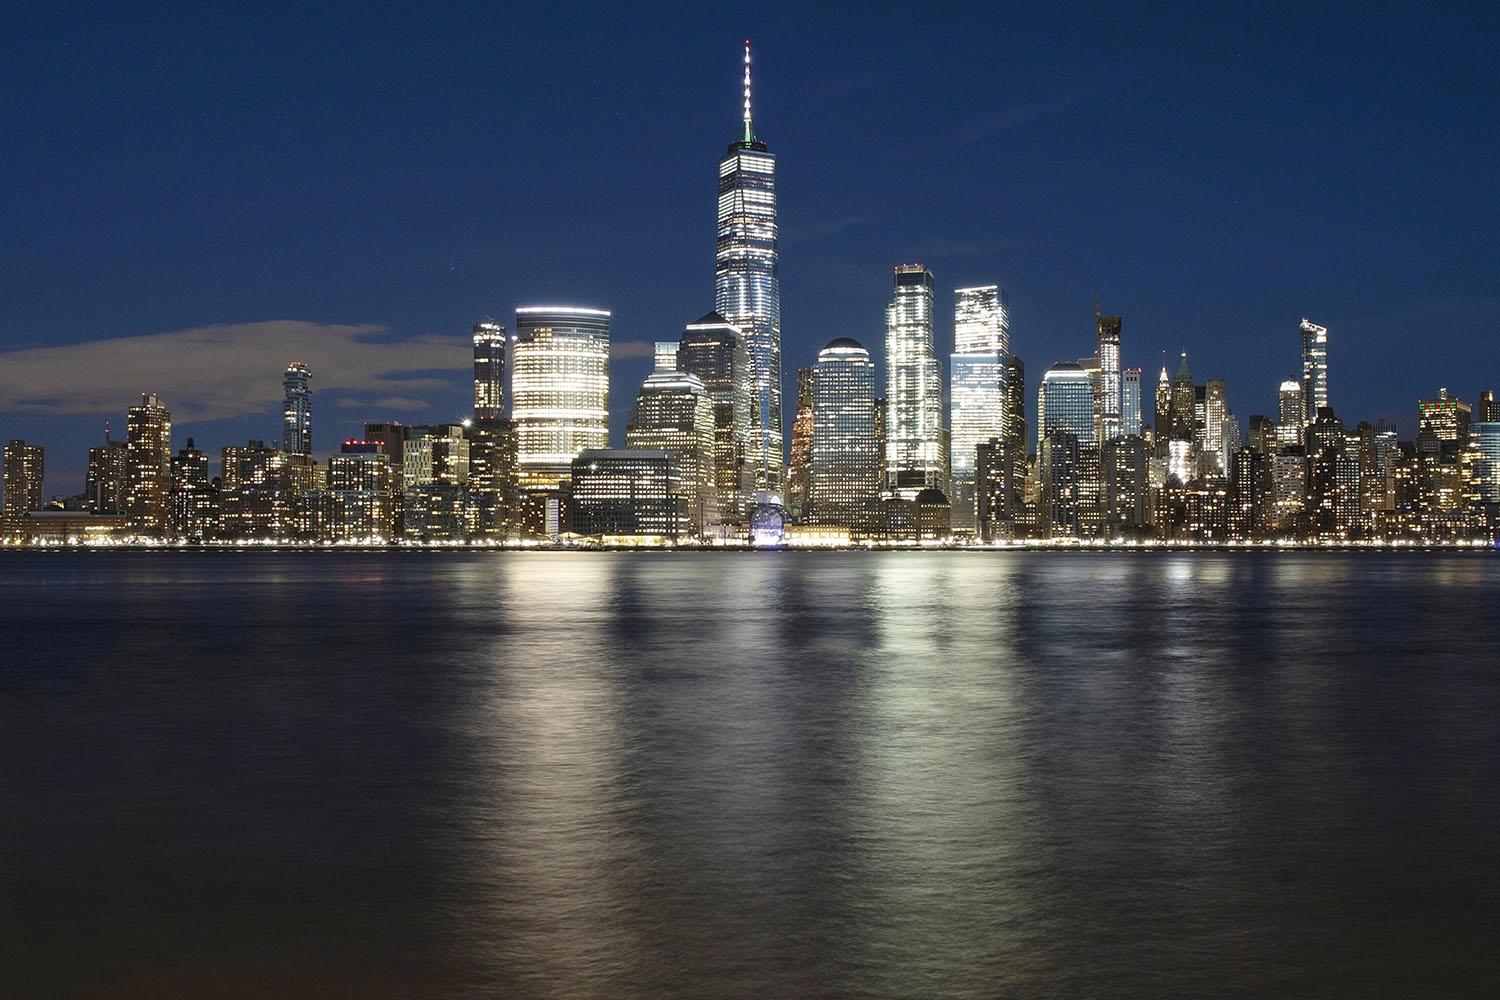 ARCHIVO - En esta foto de archivo del 28 de diciembre de 2018, el One World Trade Center se eleva sobre el horizonte del bajo Manhattan y el río Hudson, en Nueva York. (Foto AP / Mark Lennihan, archivo)